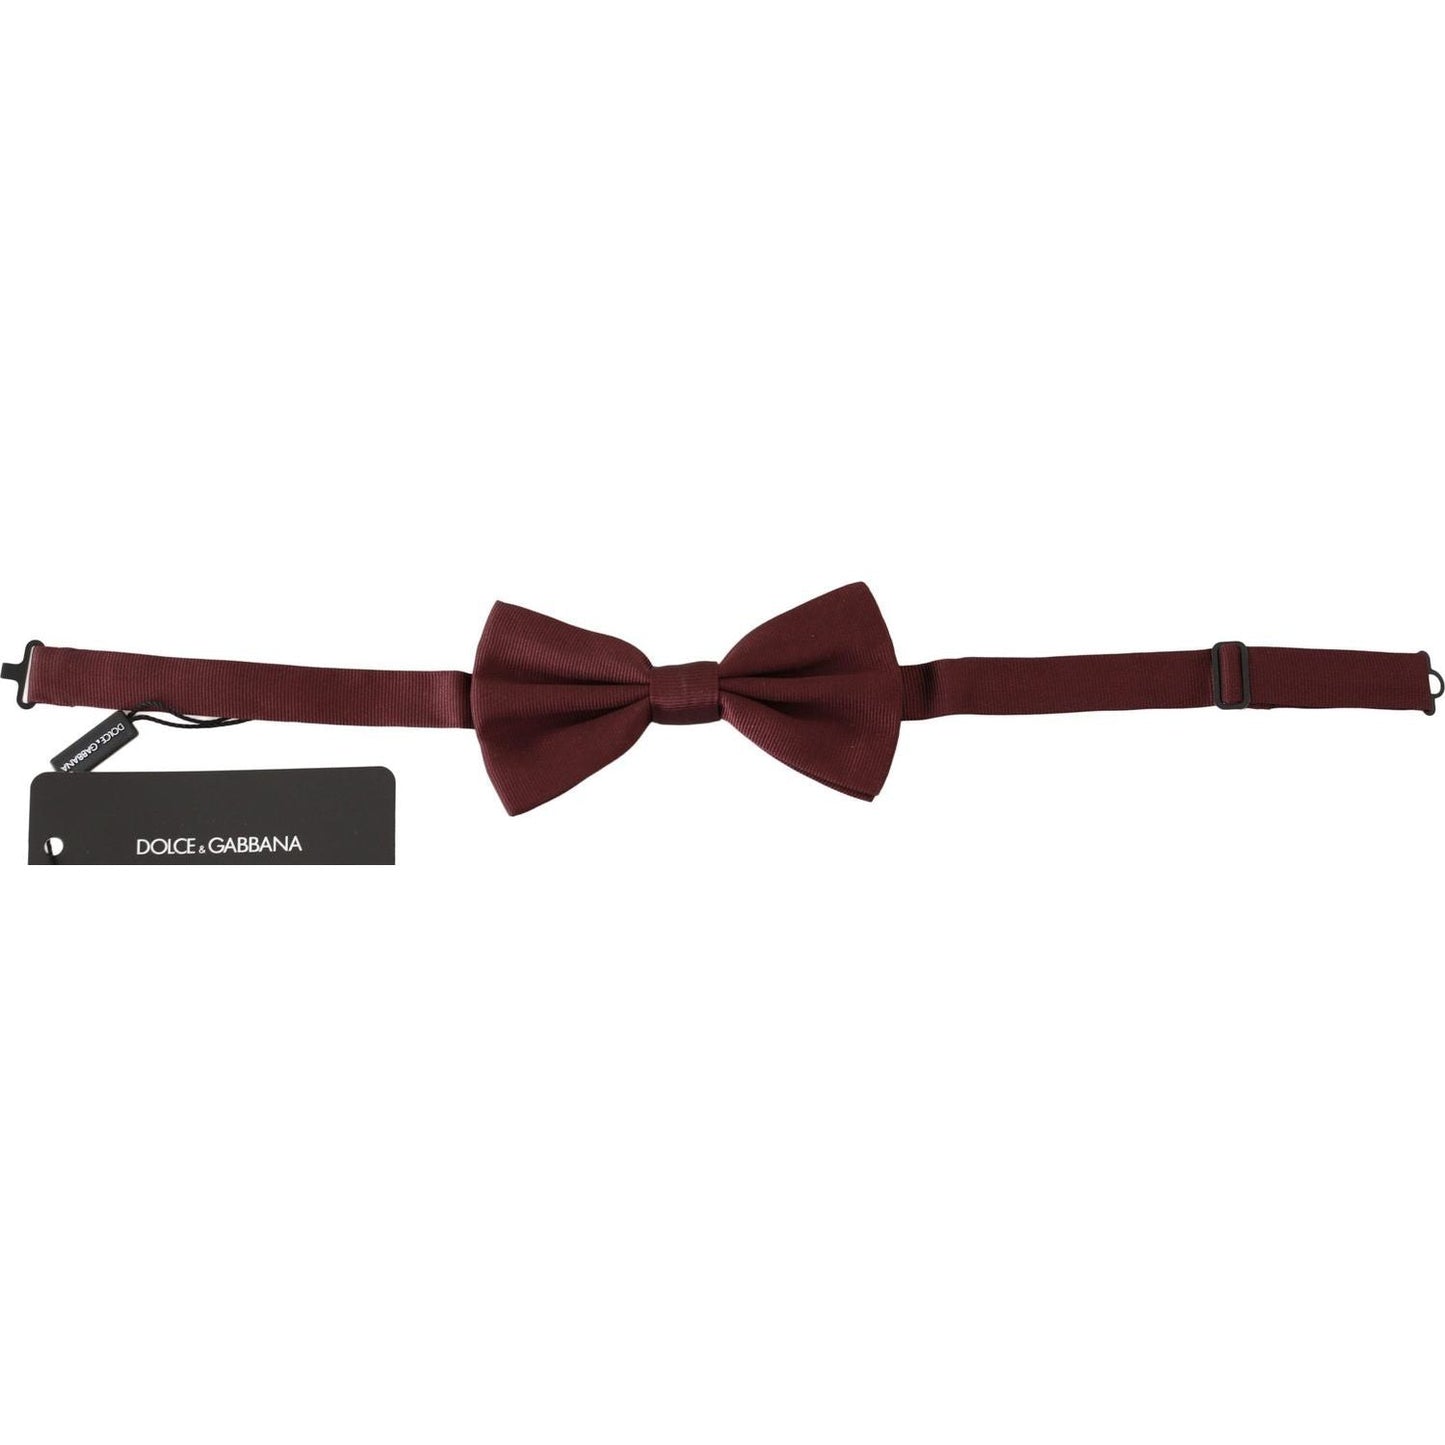 Dolce & Gabbana Elegant Maroon Silk Bow Tie maroon-100-silk-jacquard-men-bow-tie-papillon Bow Tie IMG_9498-scaled-f32921a8-716.jpg